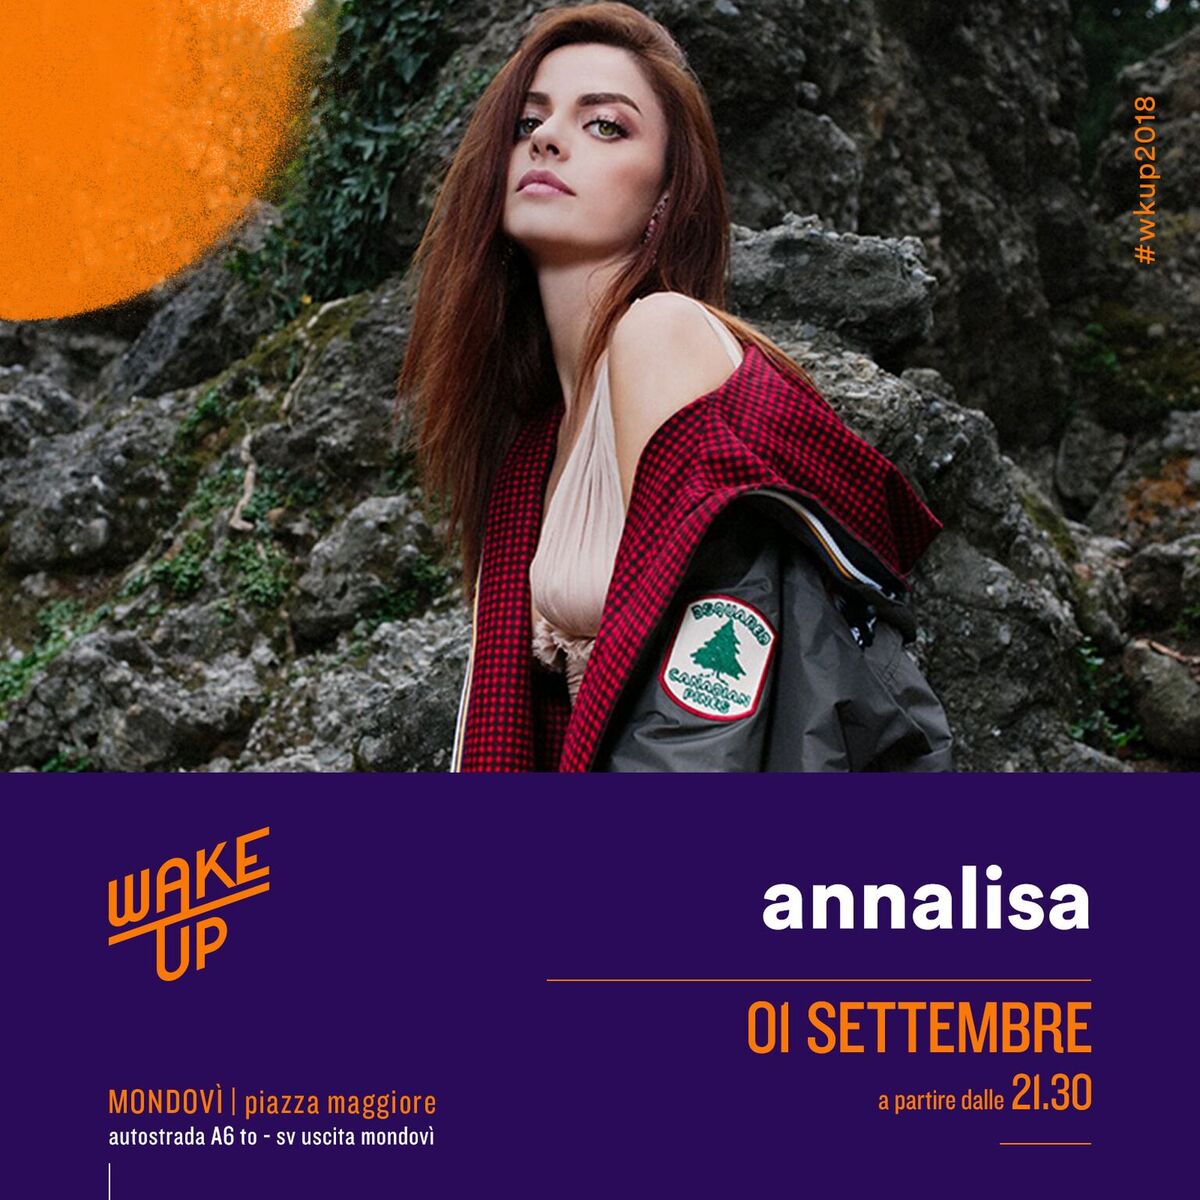 Il primo settembre ANNALISA inaugura la III edizione del Festival Wake Up